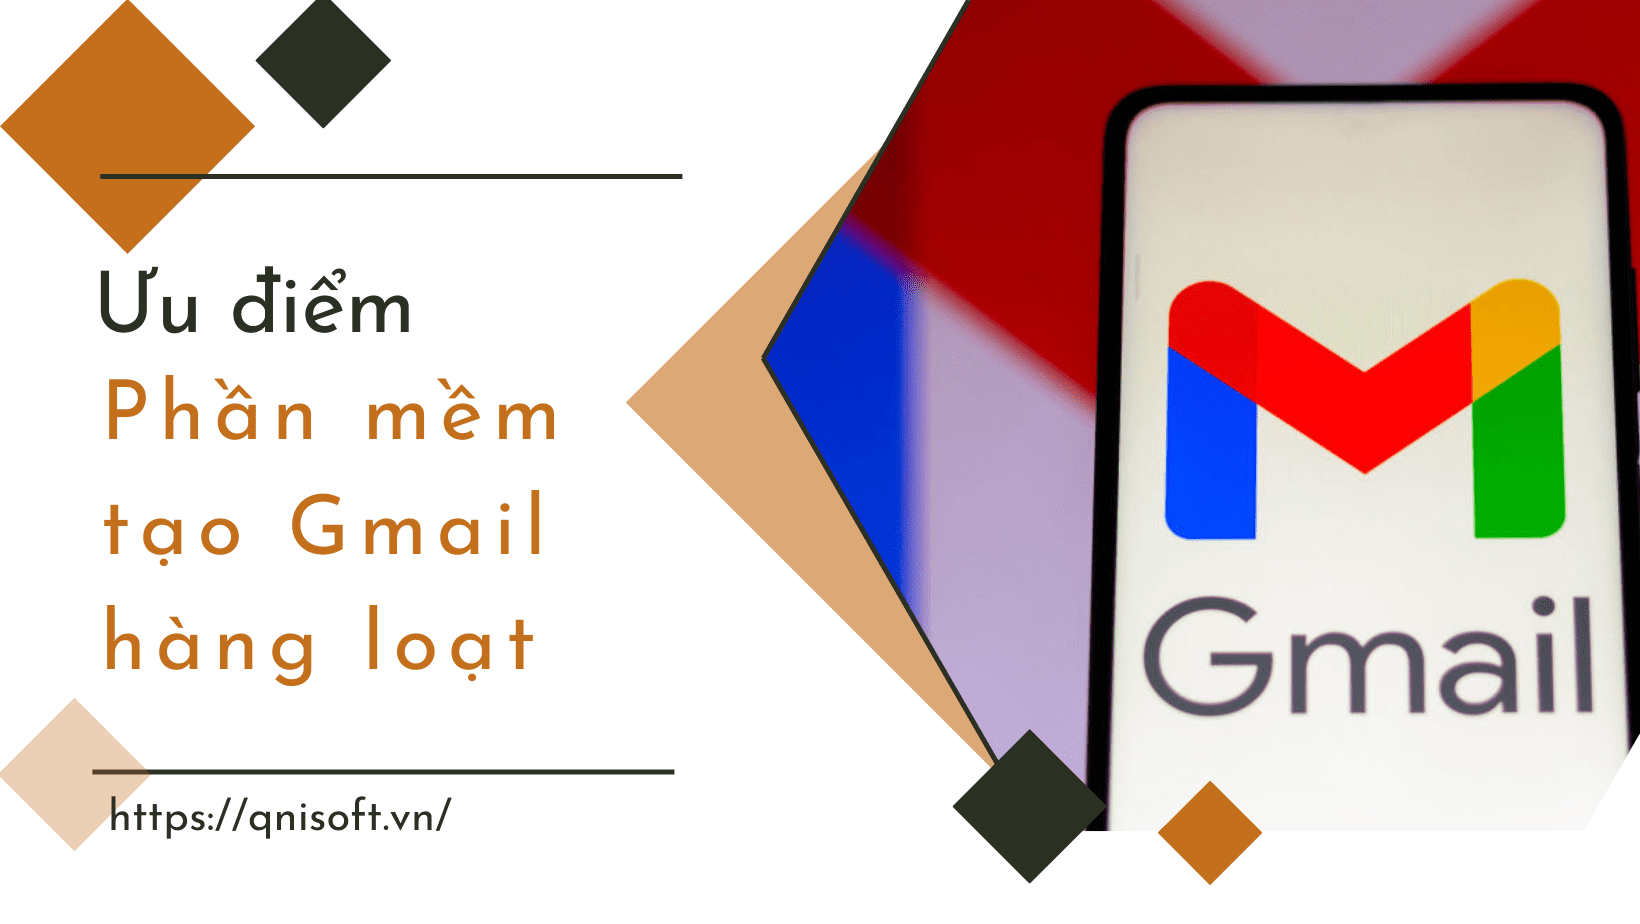 Ưu điểm của phần mềm tạo Gmail - Cách tạo 1000 Gmail nhanh chóng